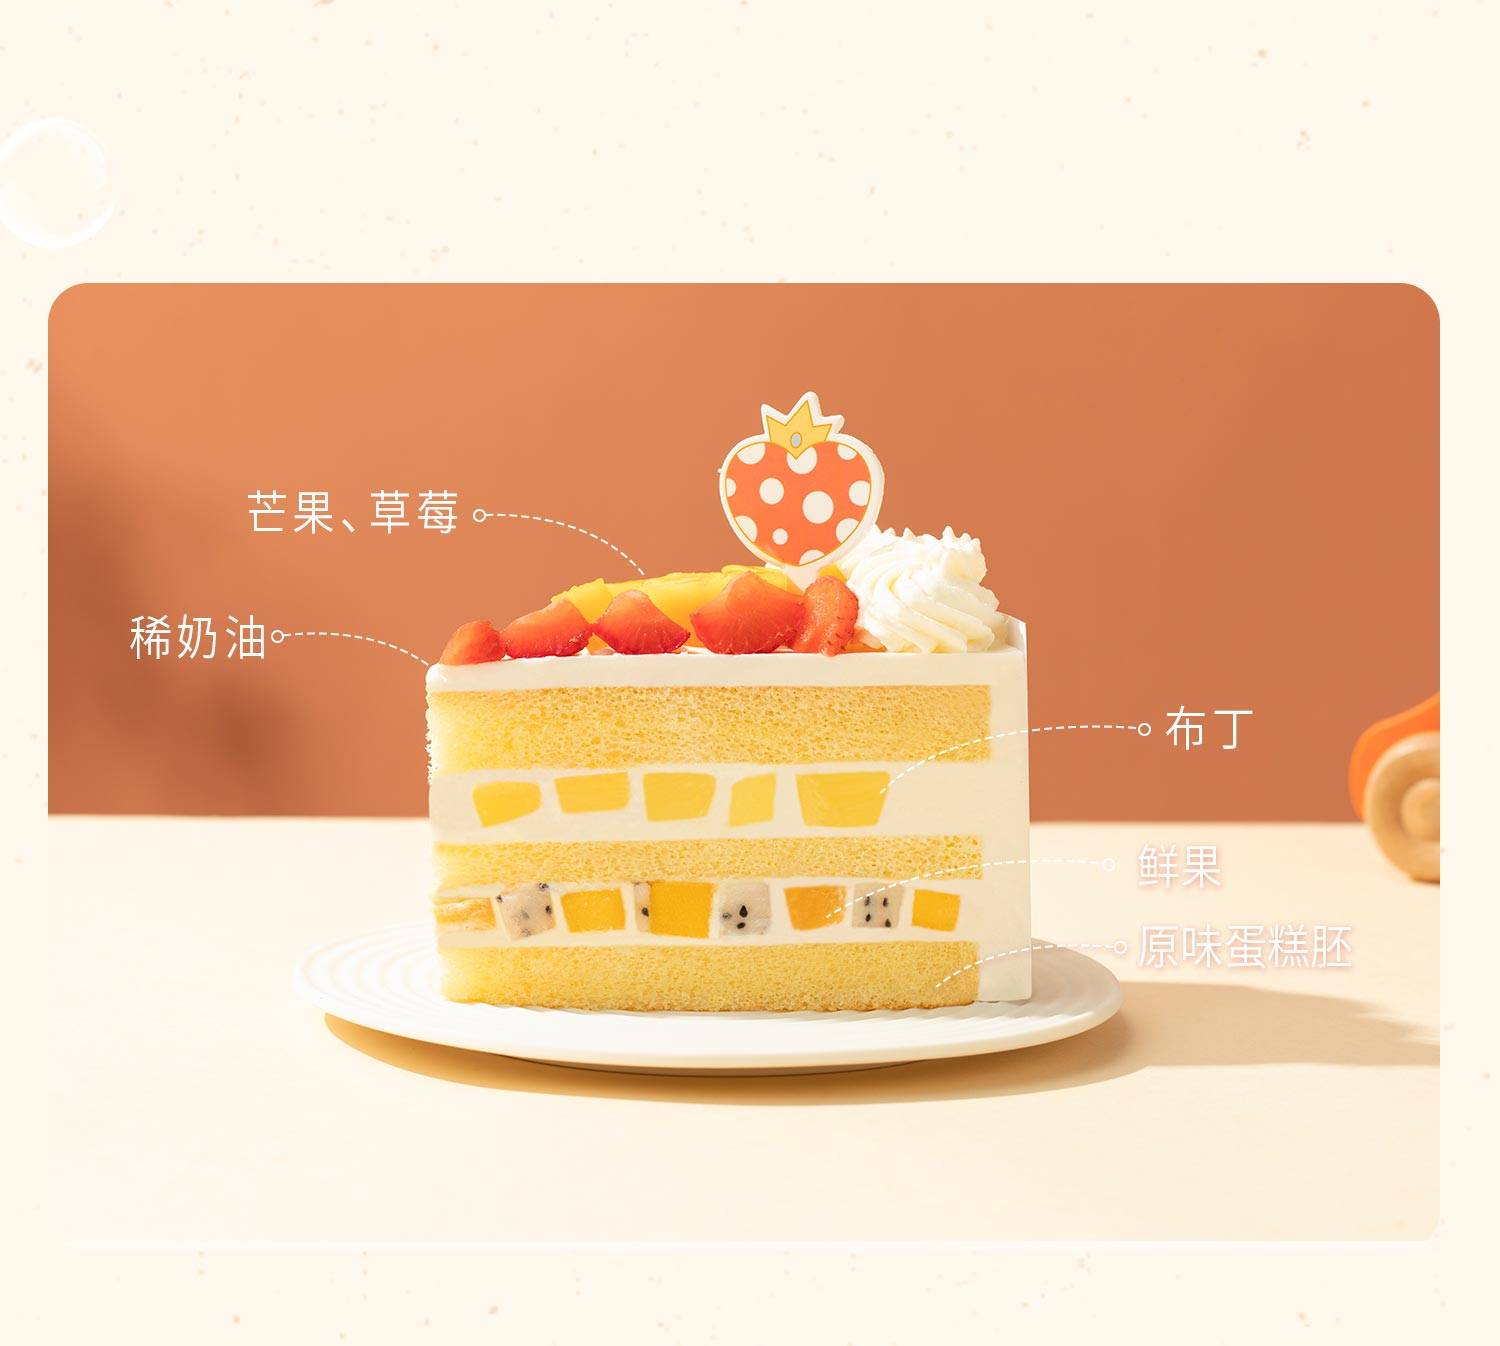 全心全意-6磅_幸福西饼蛋糕预定_加盟幸福西饼_深圳幸福西饼官方网站